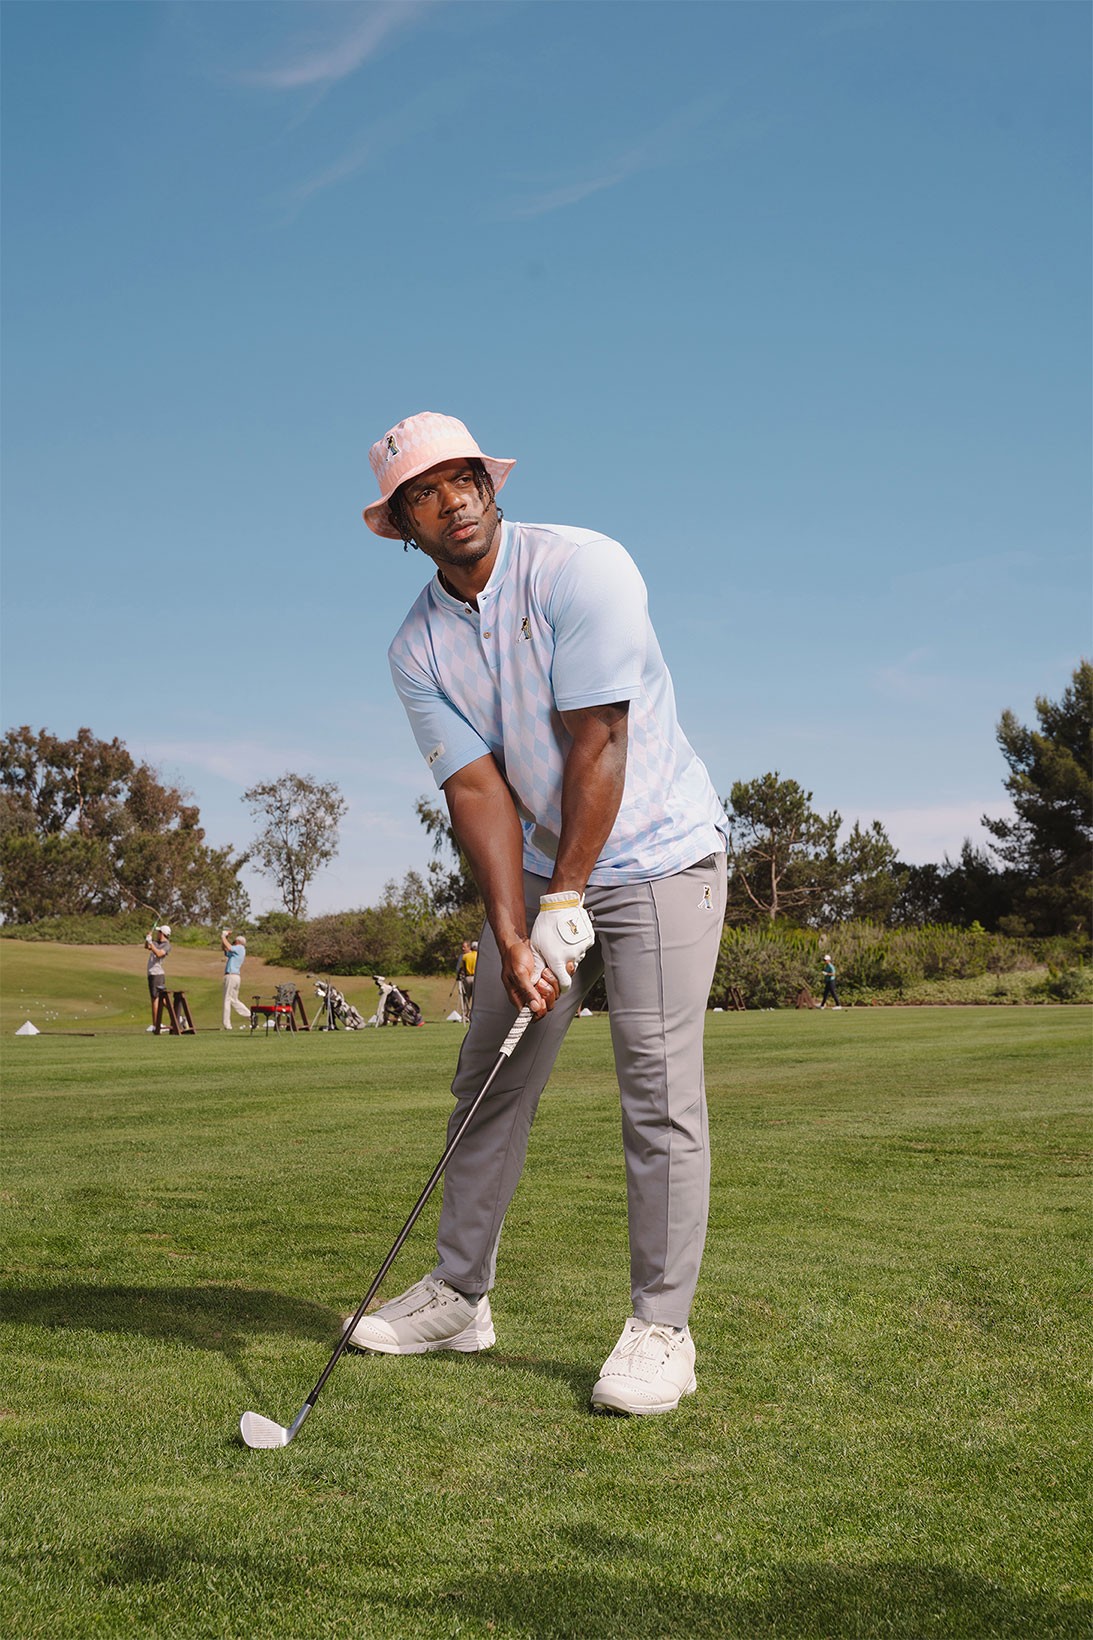 adidas выпустил гольф-коллекцию в стиле комедии «Счастливчик Гилмор» (фото 10)